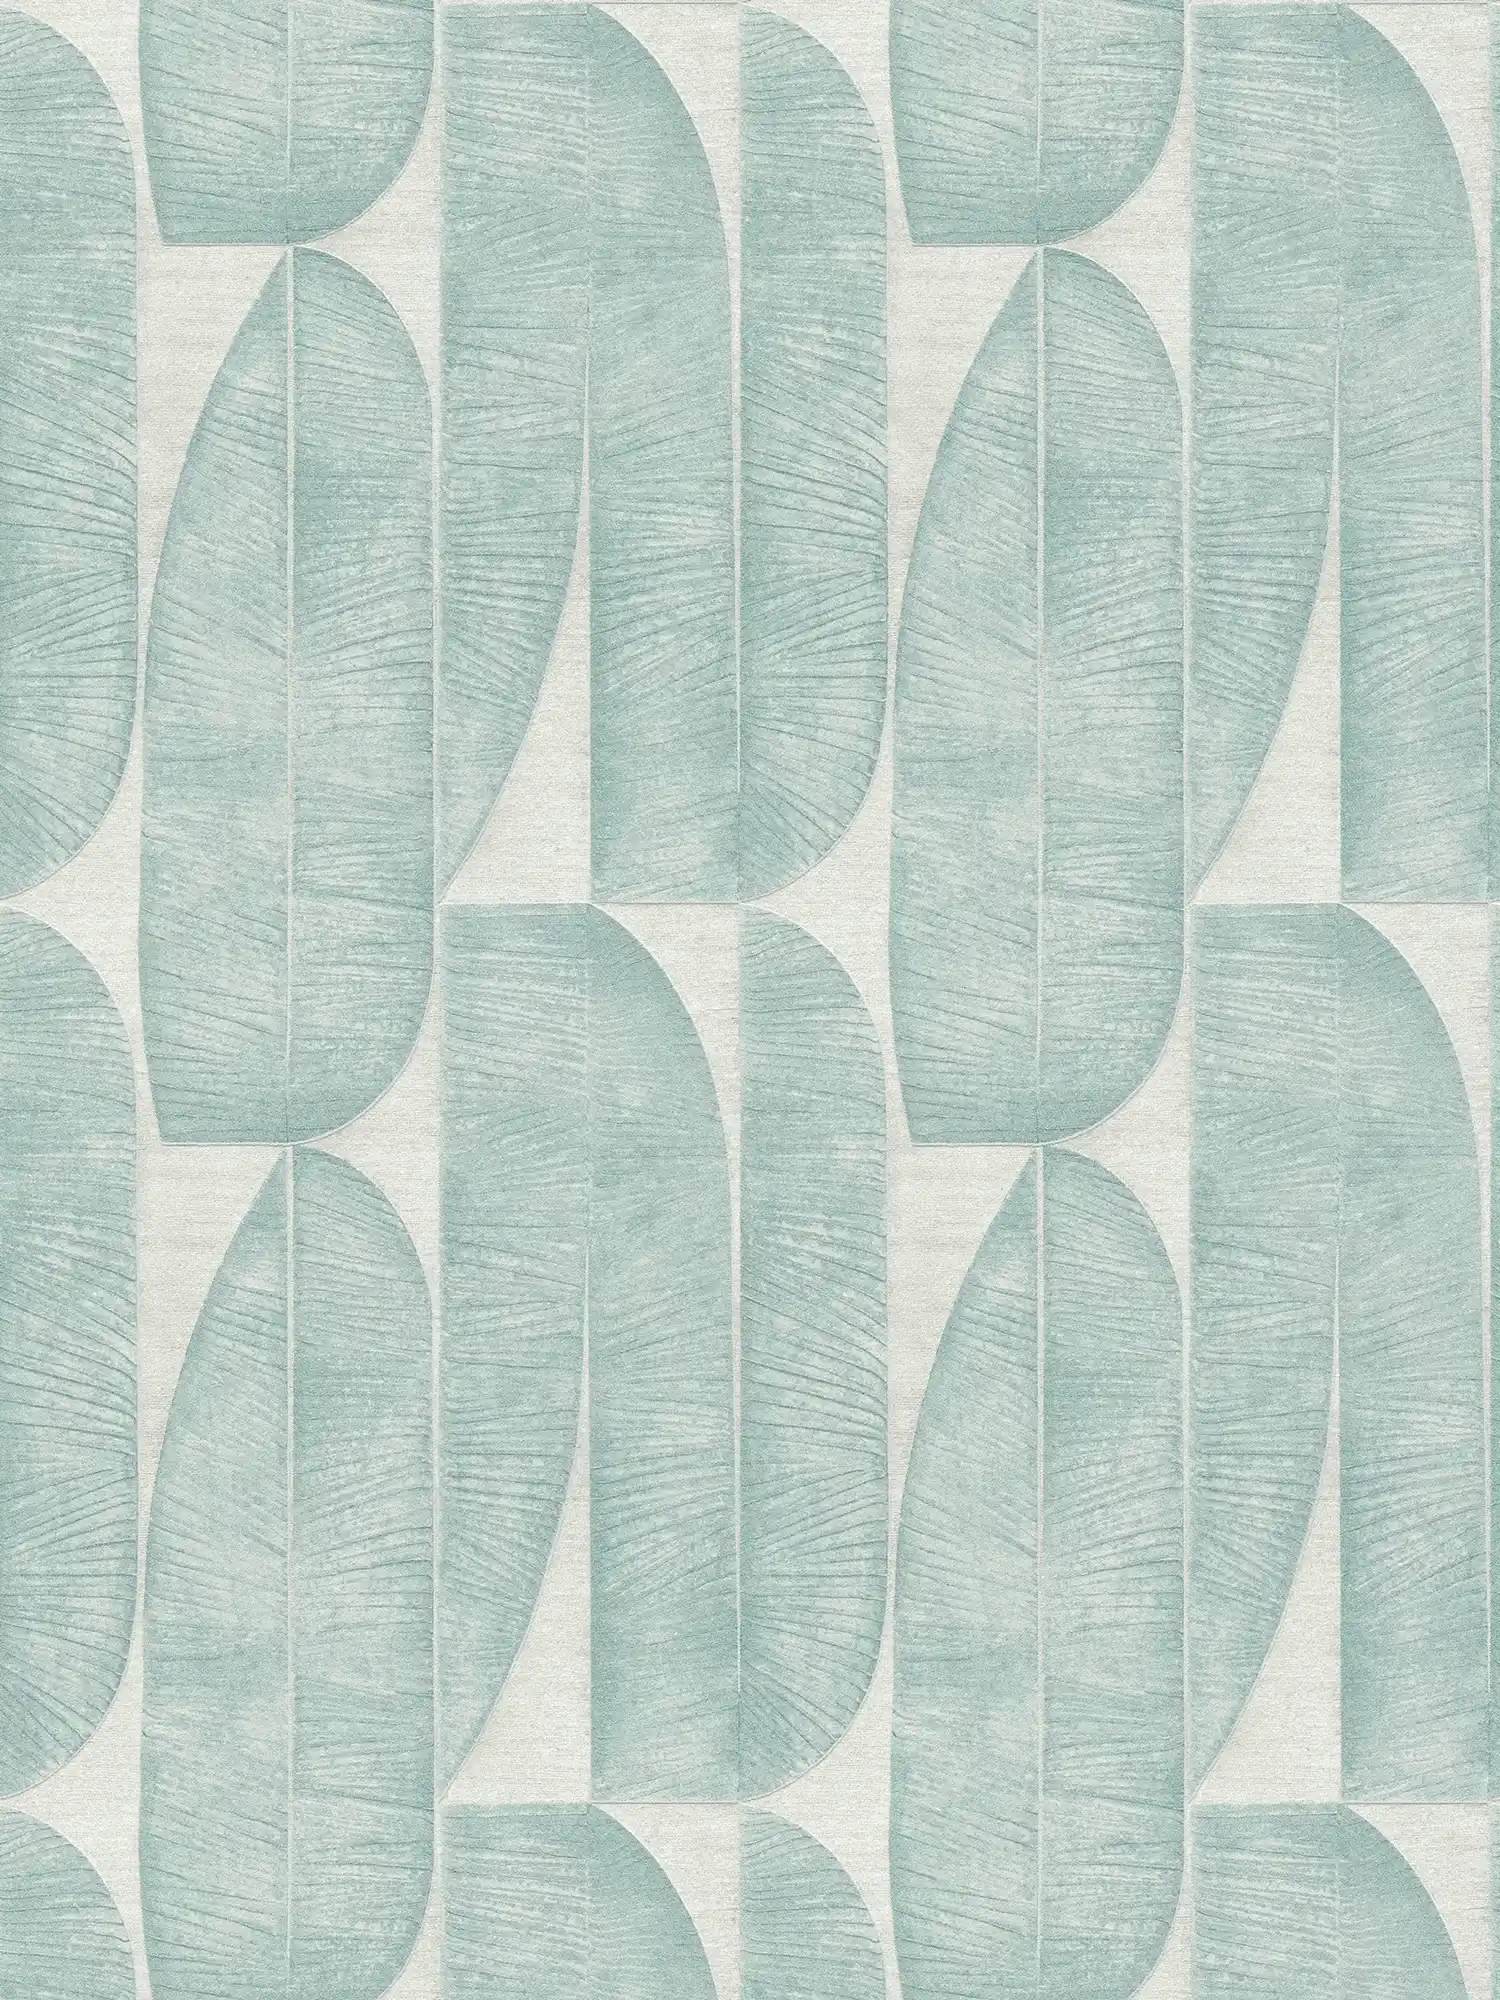 Leicht strukturierte Tapete mit geometrischem Blattmuster – Grau, Blau, Türkis
